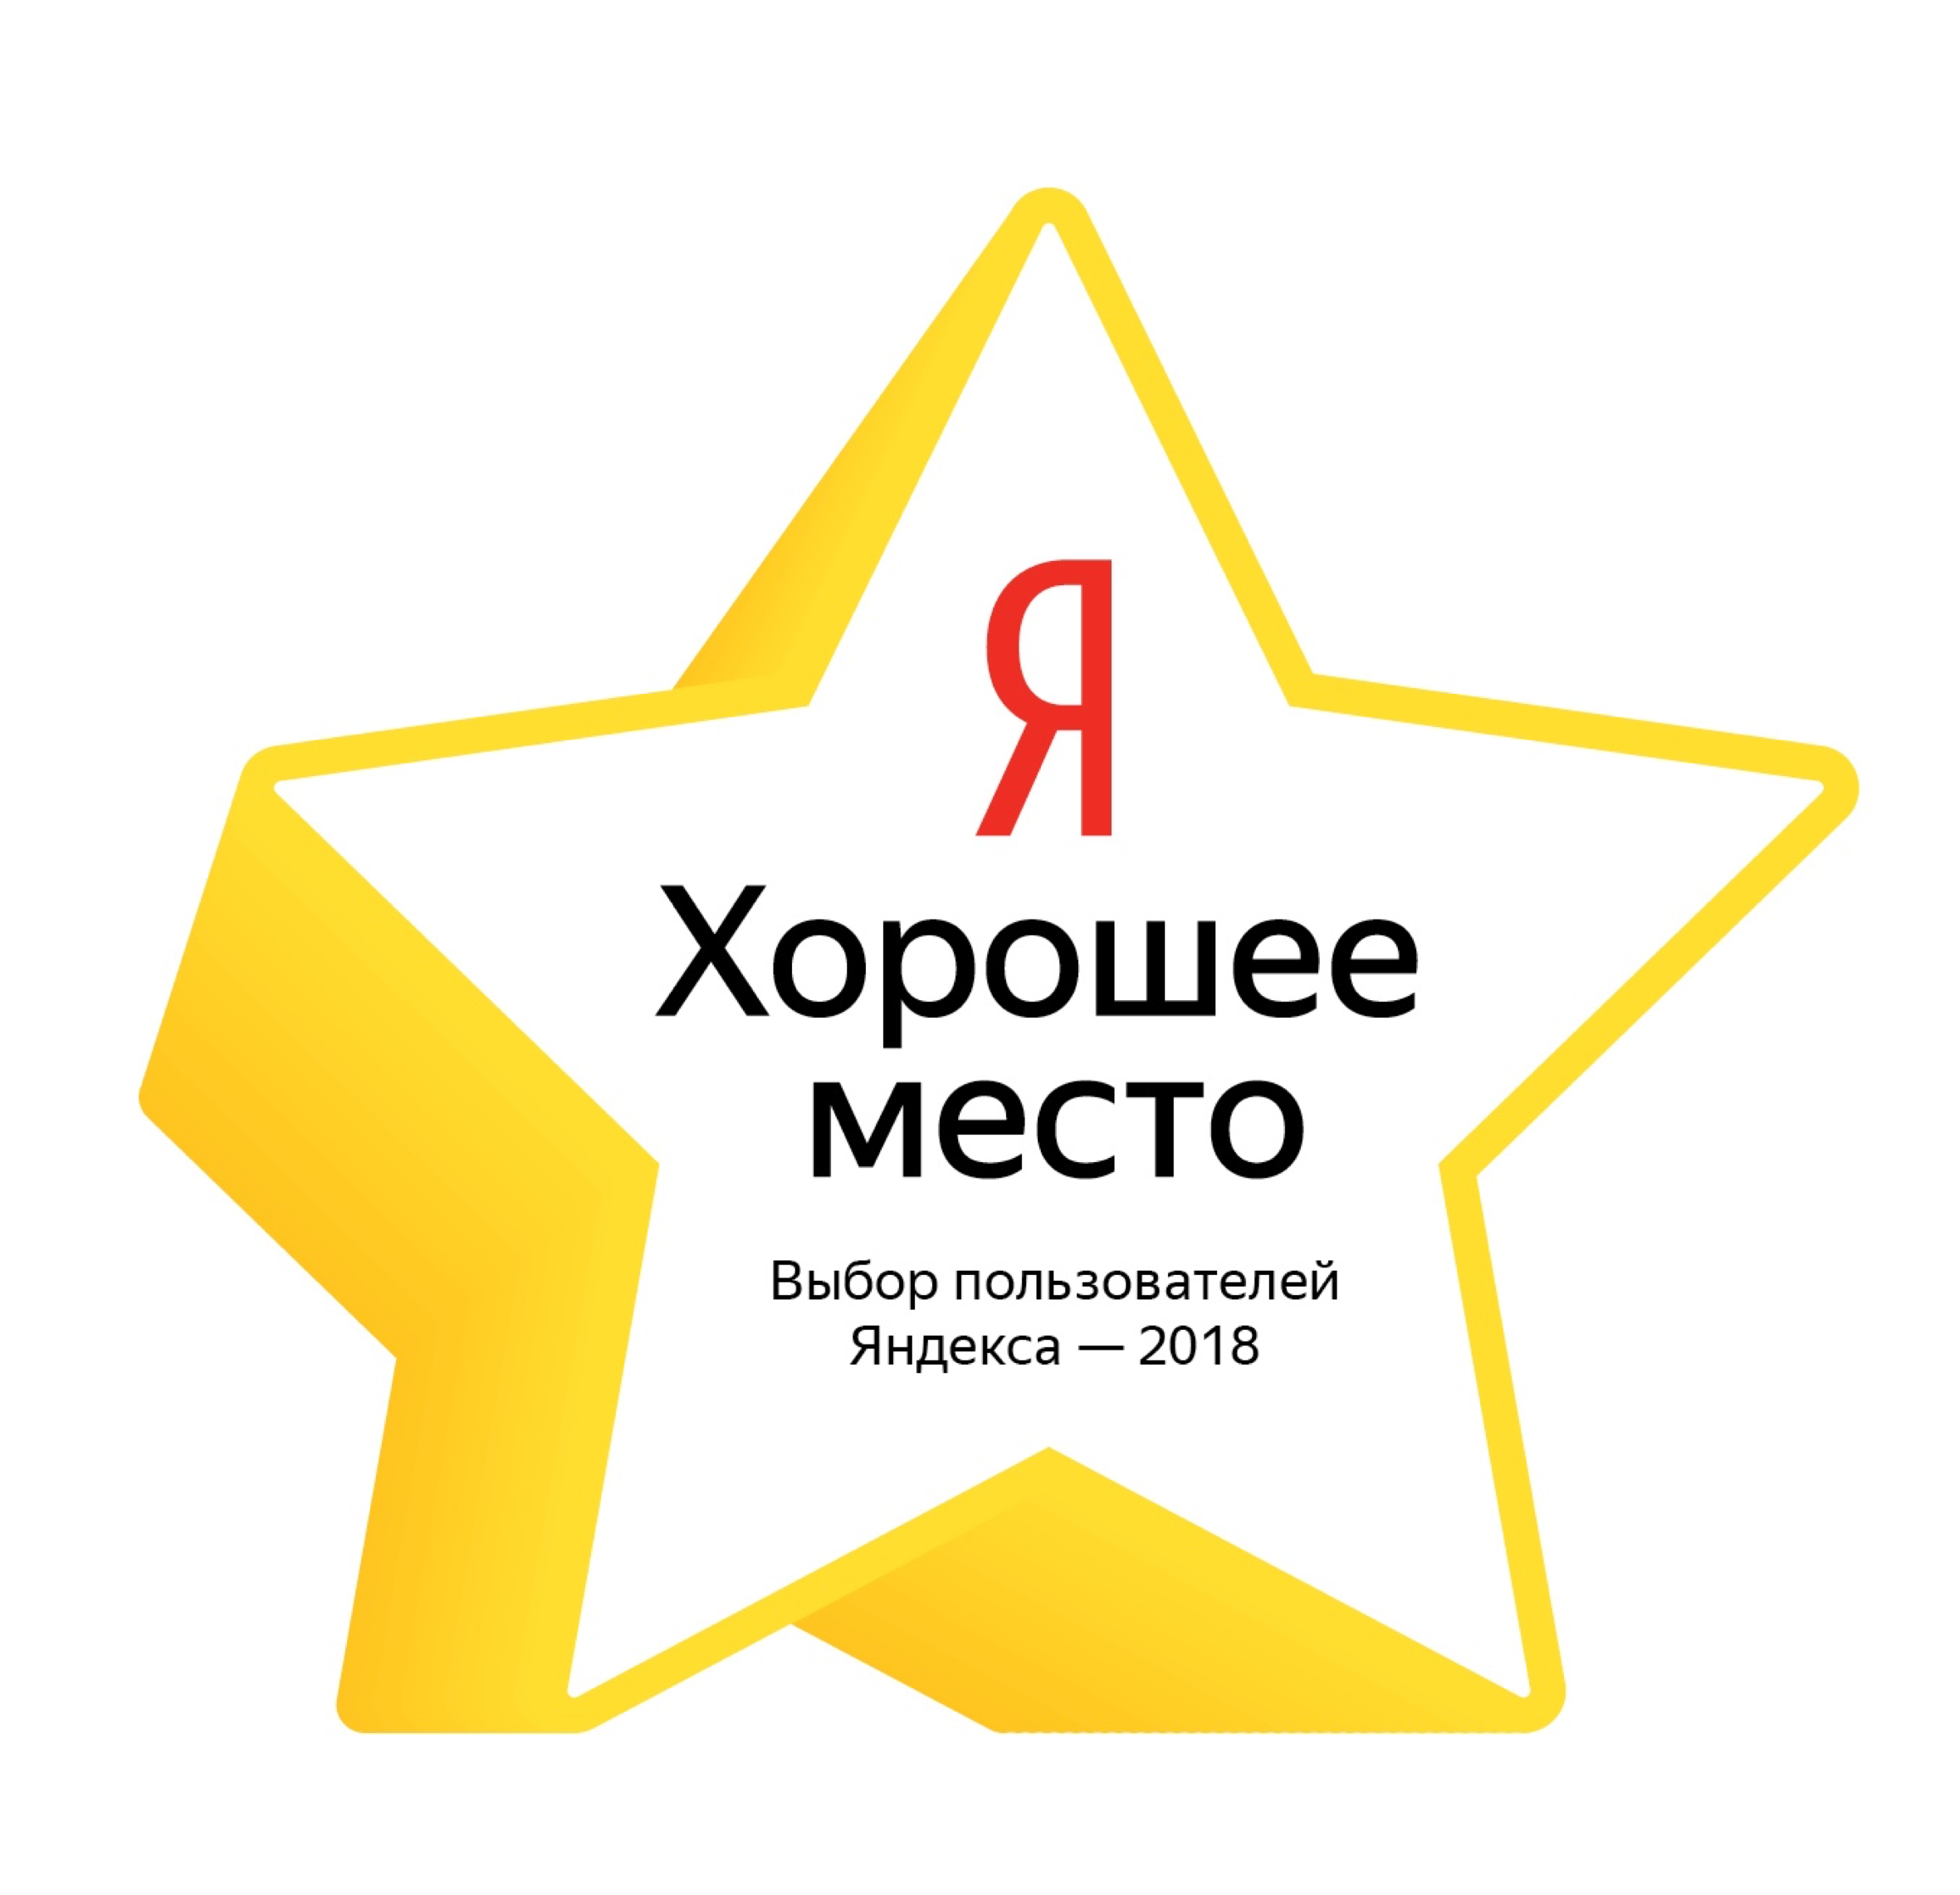 Метка «Хорошее место» от Яндекса